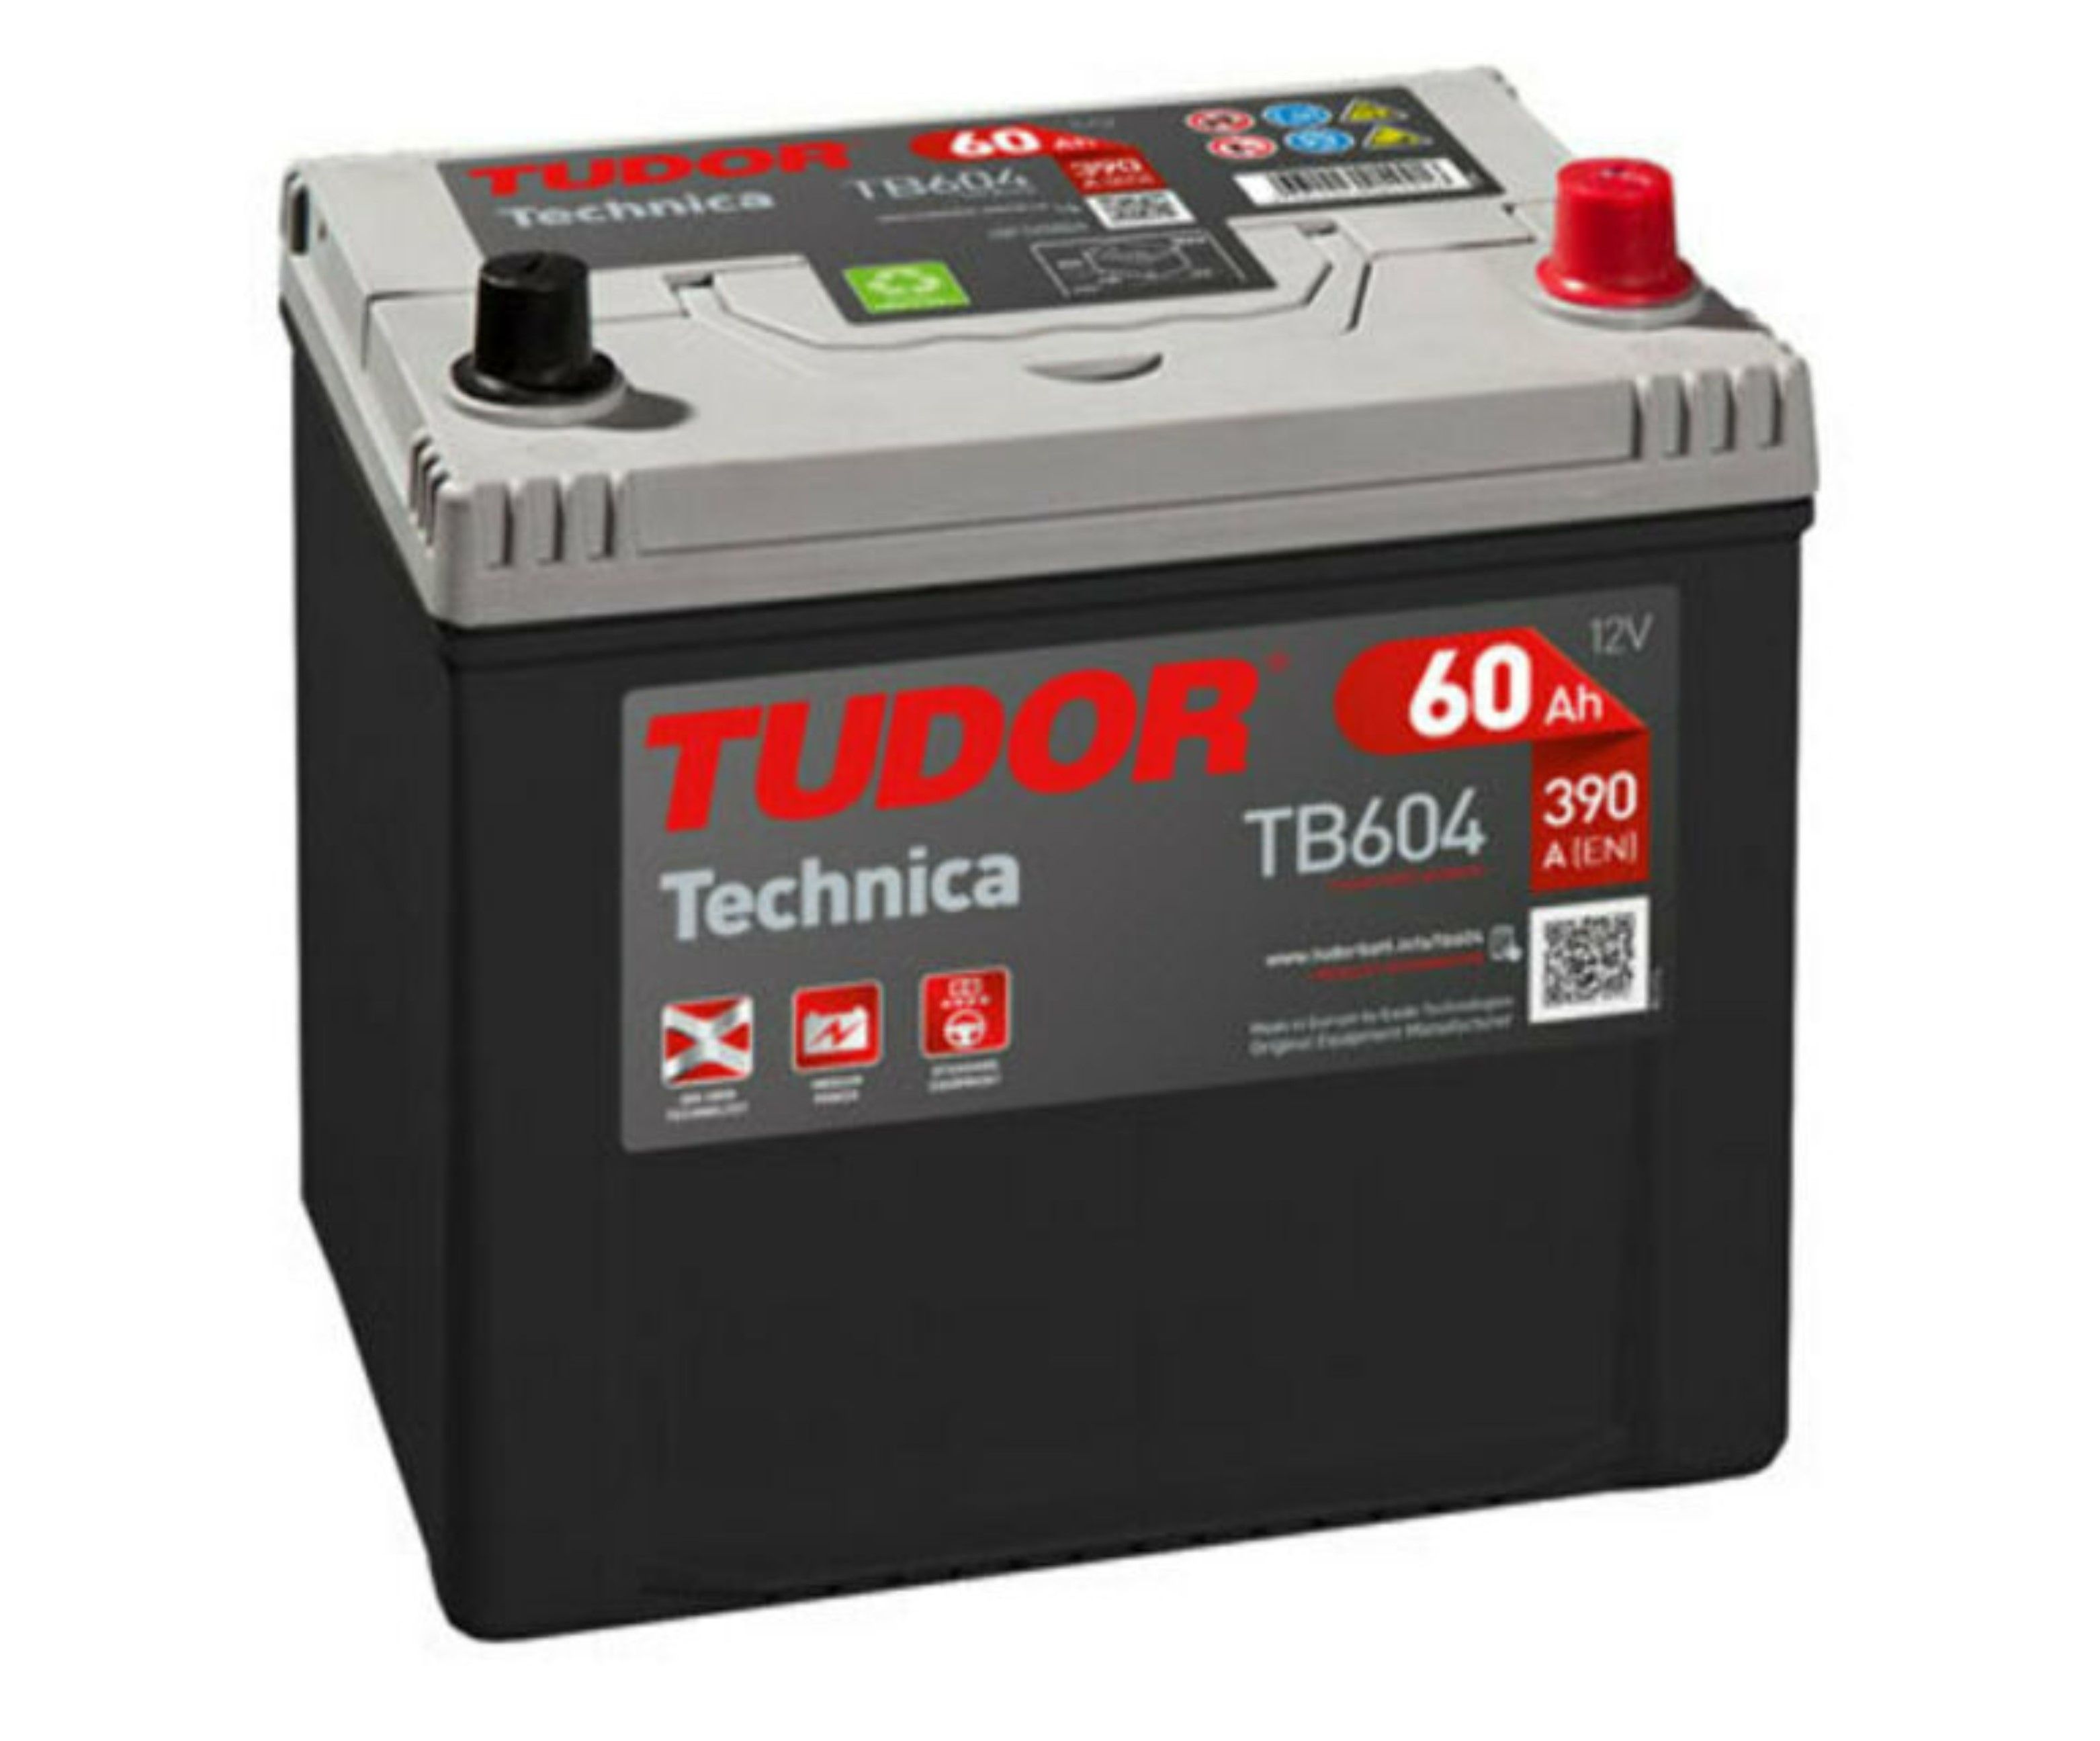 Tudor Technica, 12V 60Ah, TB604